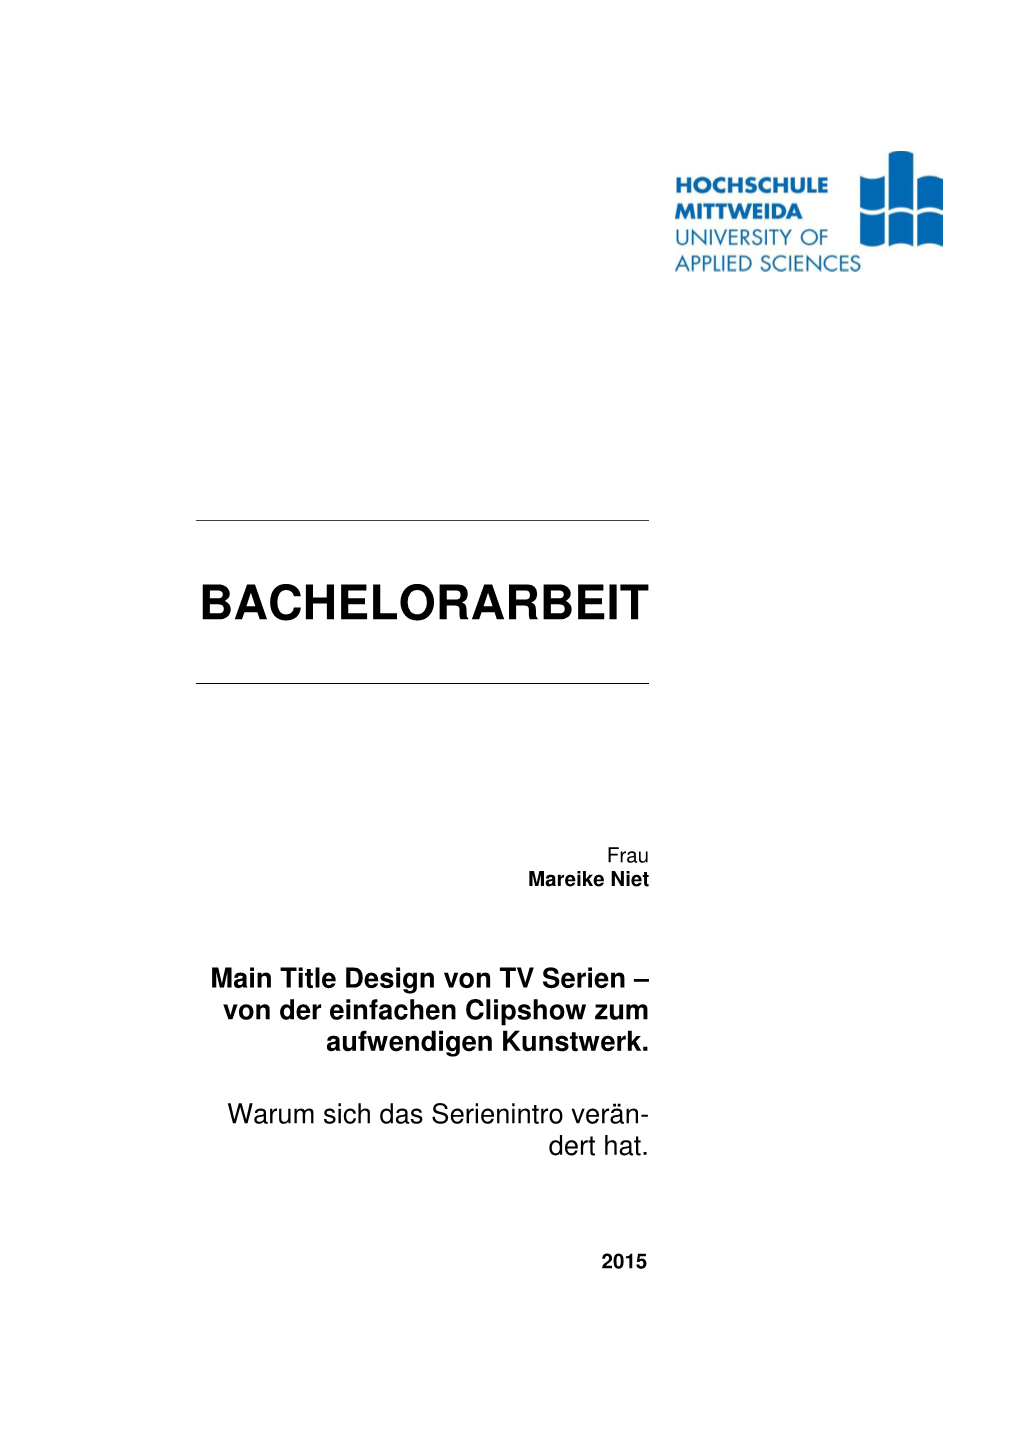 Main Title Design Von TV Serien – Von Der Einfachen Clipshow Zum Aufwendigen Kunstwerk